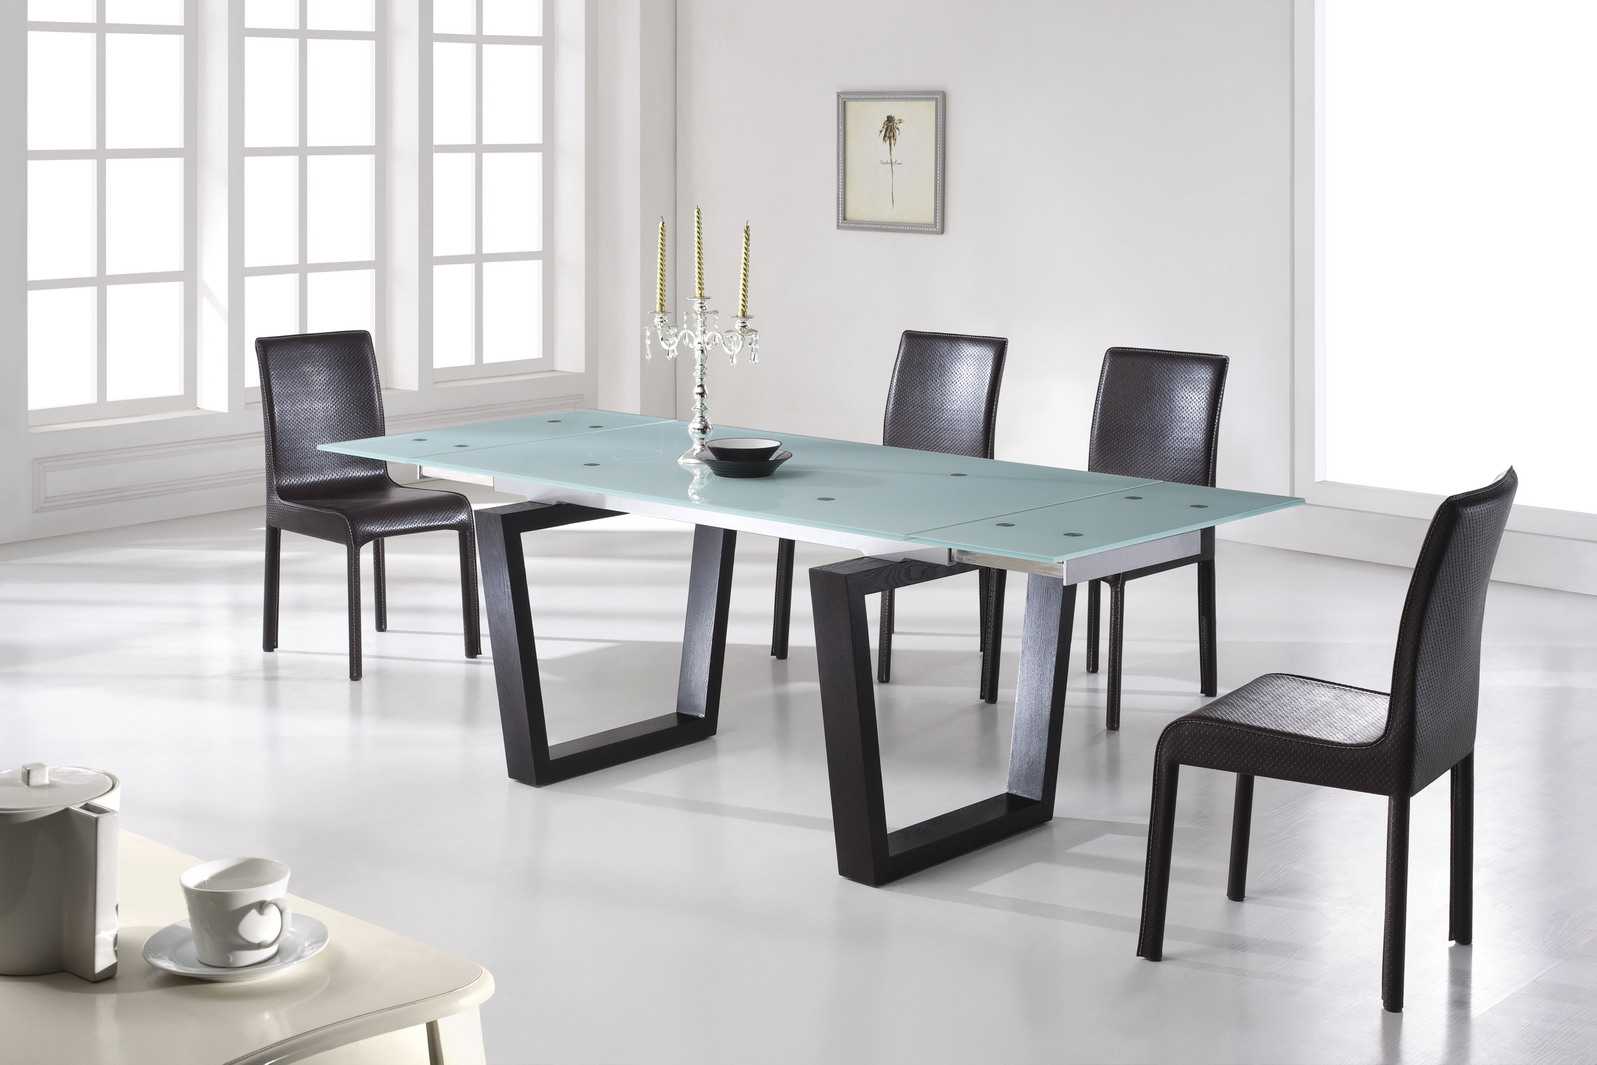 Кухонные столы и стулья: правила подбора, материалы, цвета